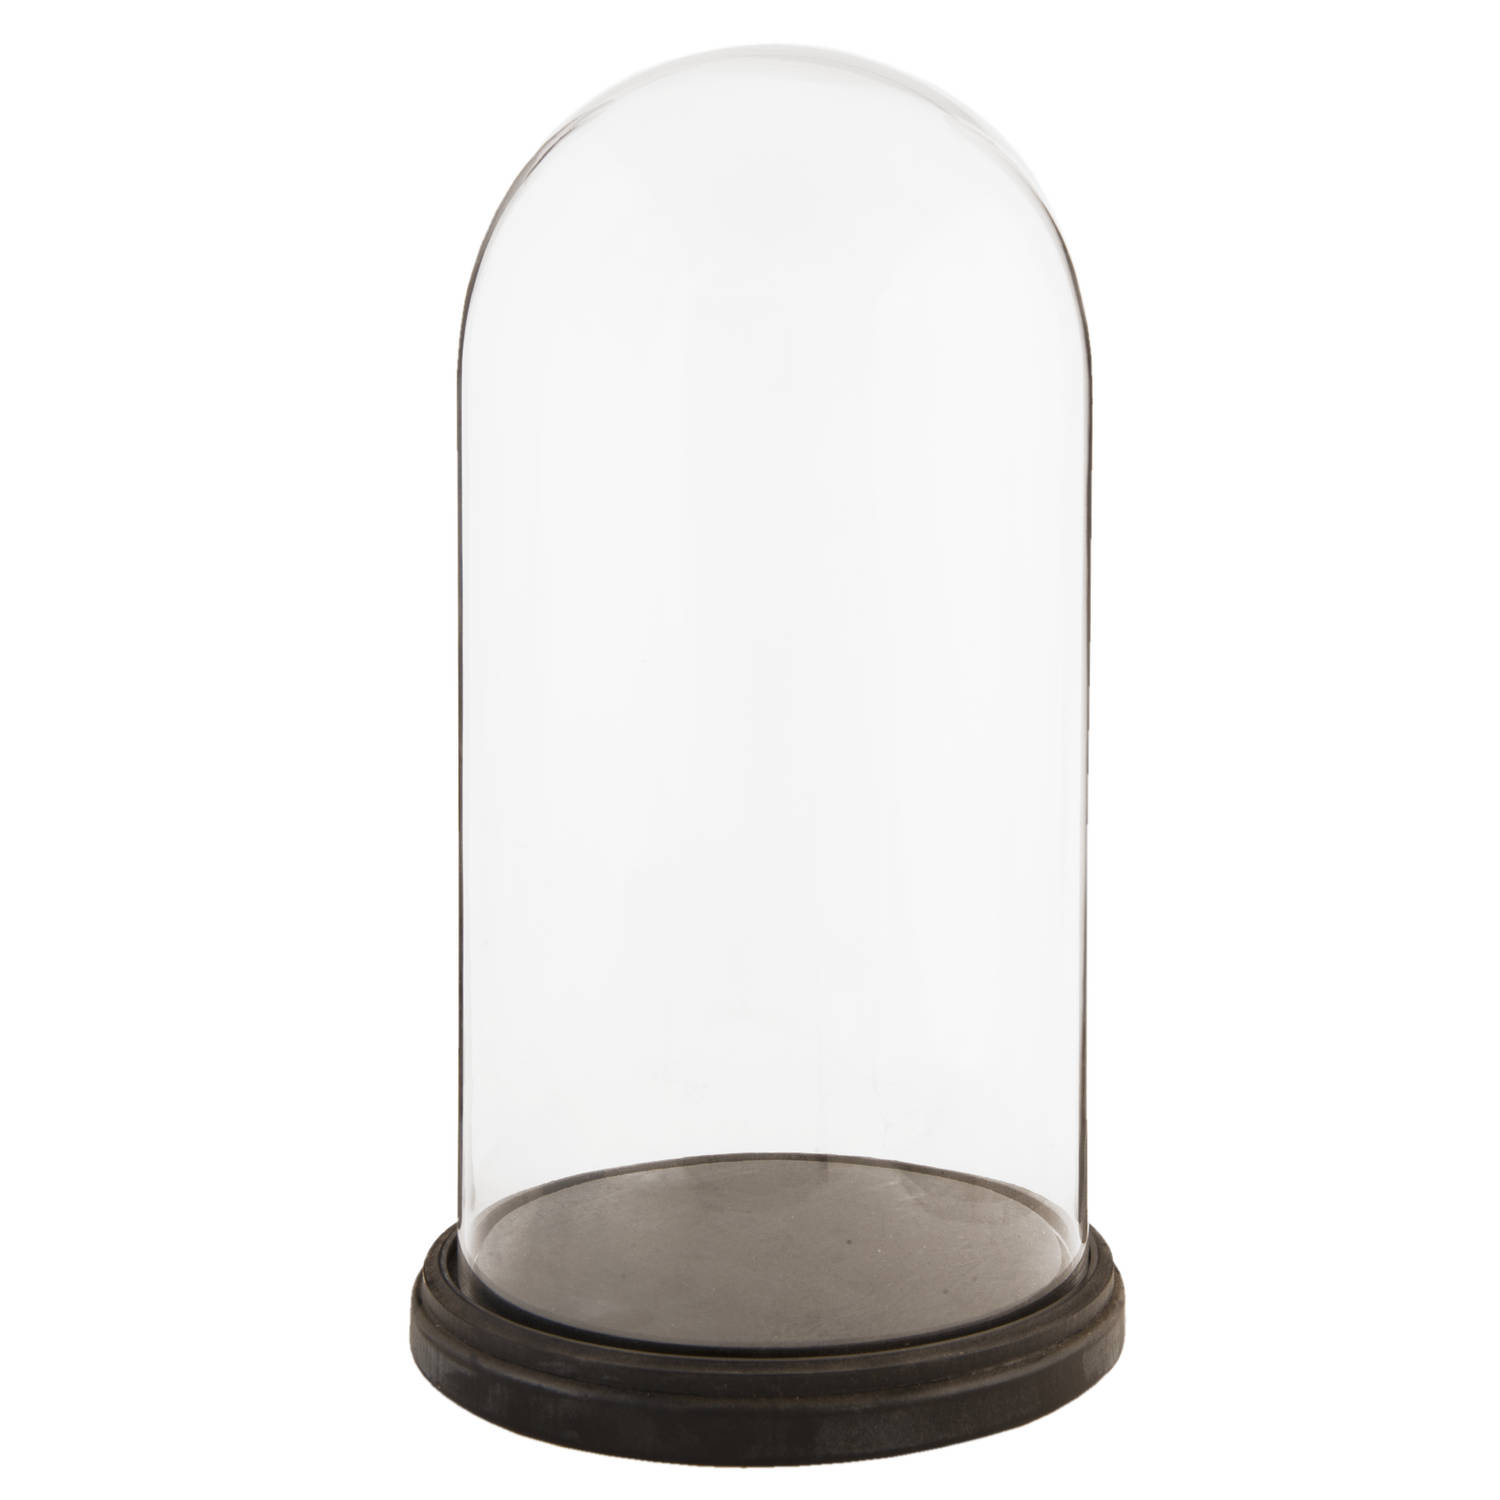 HAES DECO - Decoratieve glazen stolp met bruin houten voet, diameter 26 cm en hoogte 47 cm - ST012731